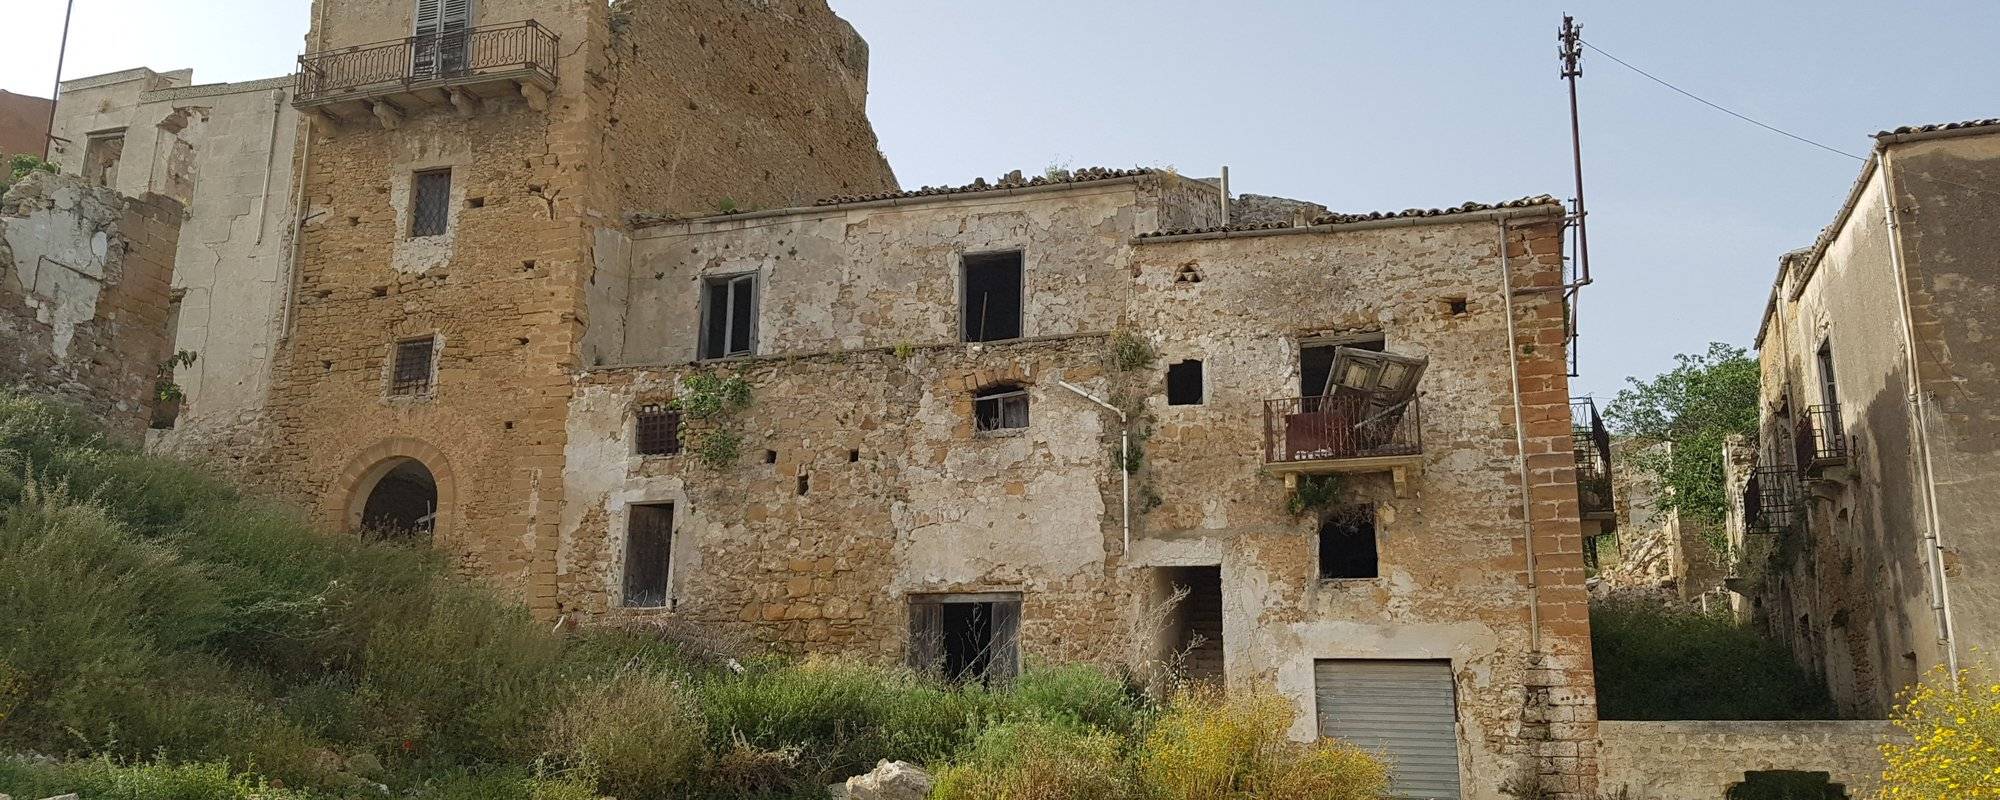 Poggioreale - abandoned town in Sicily.